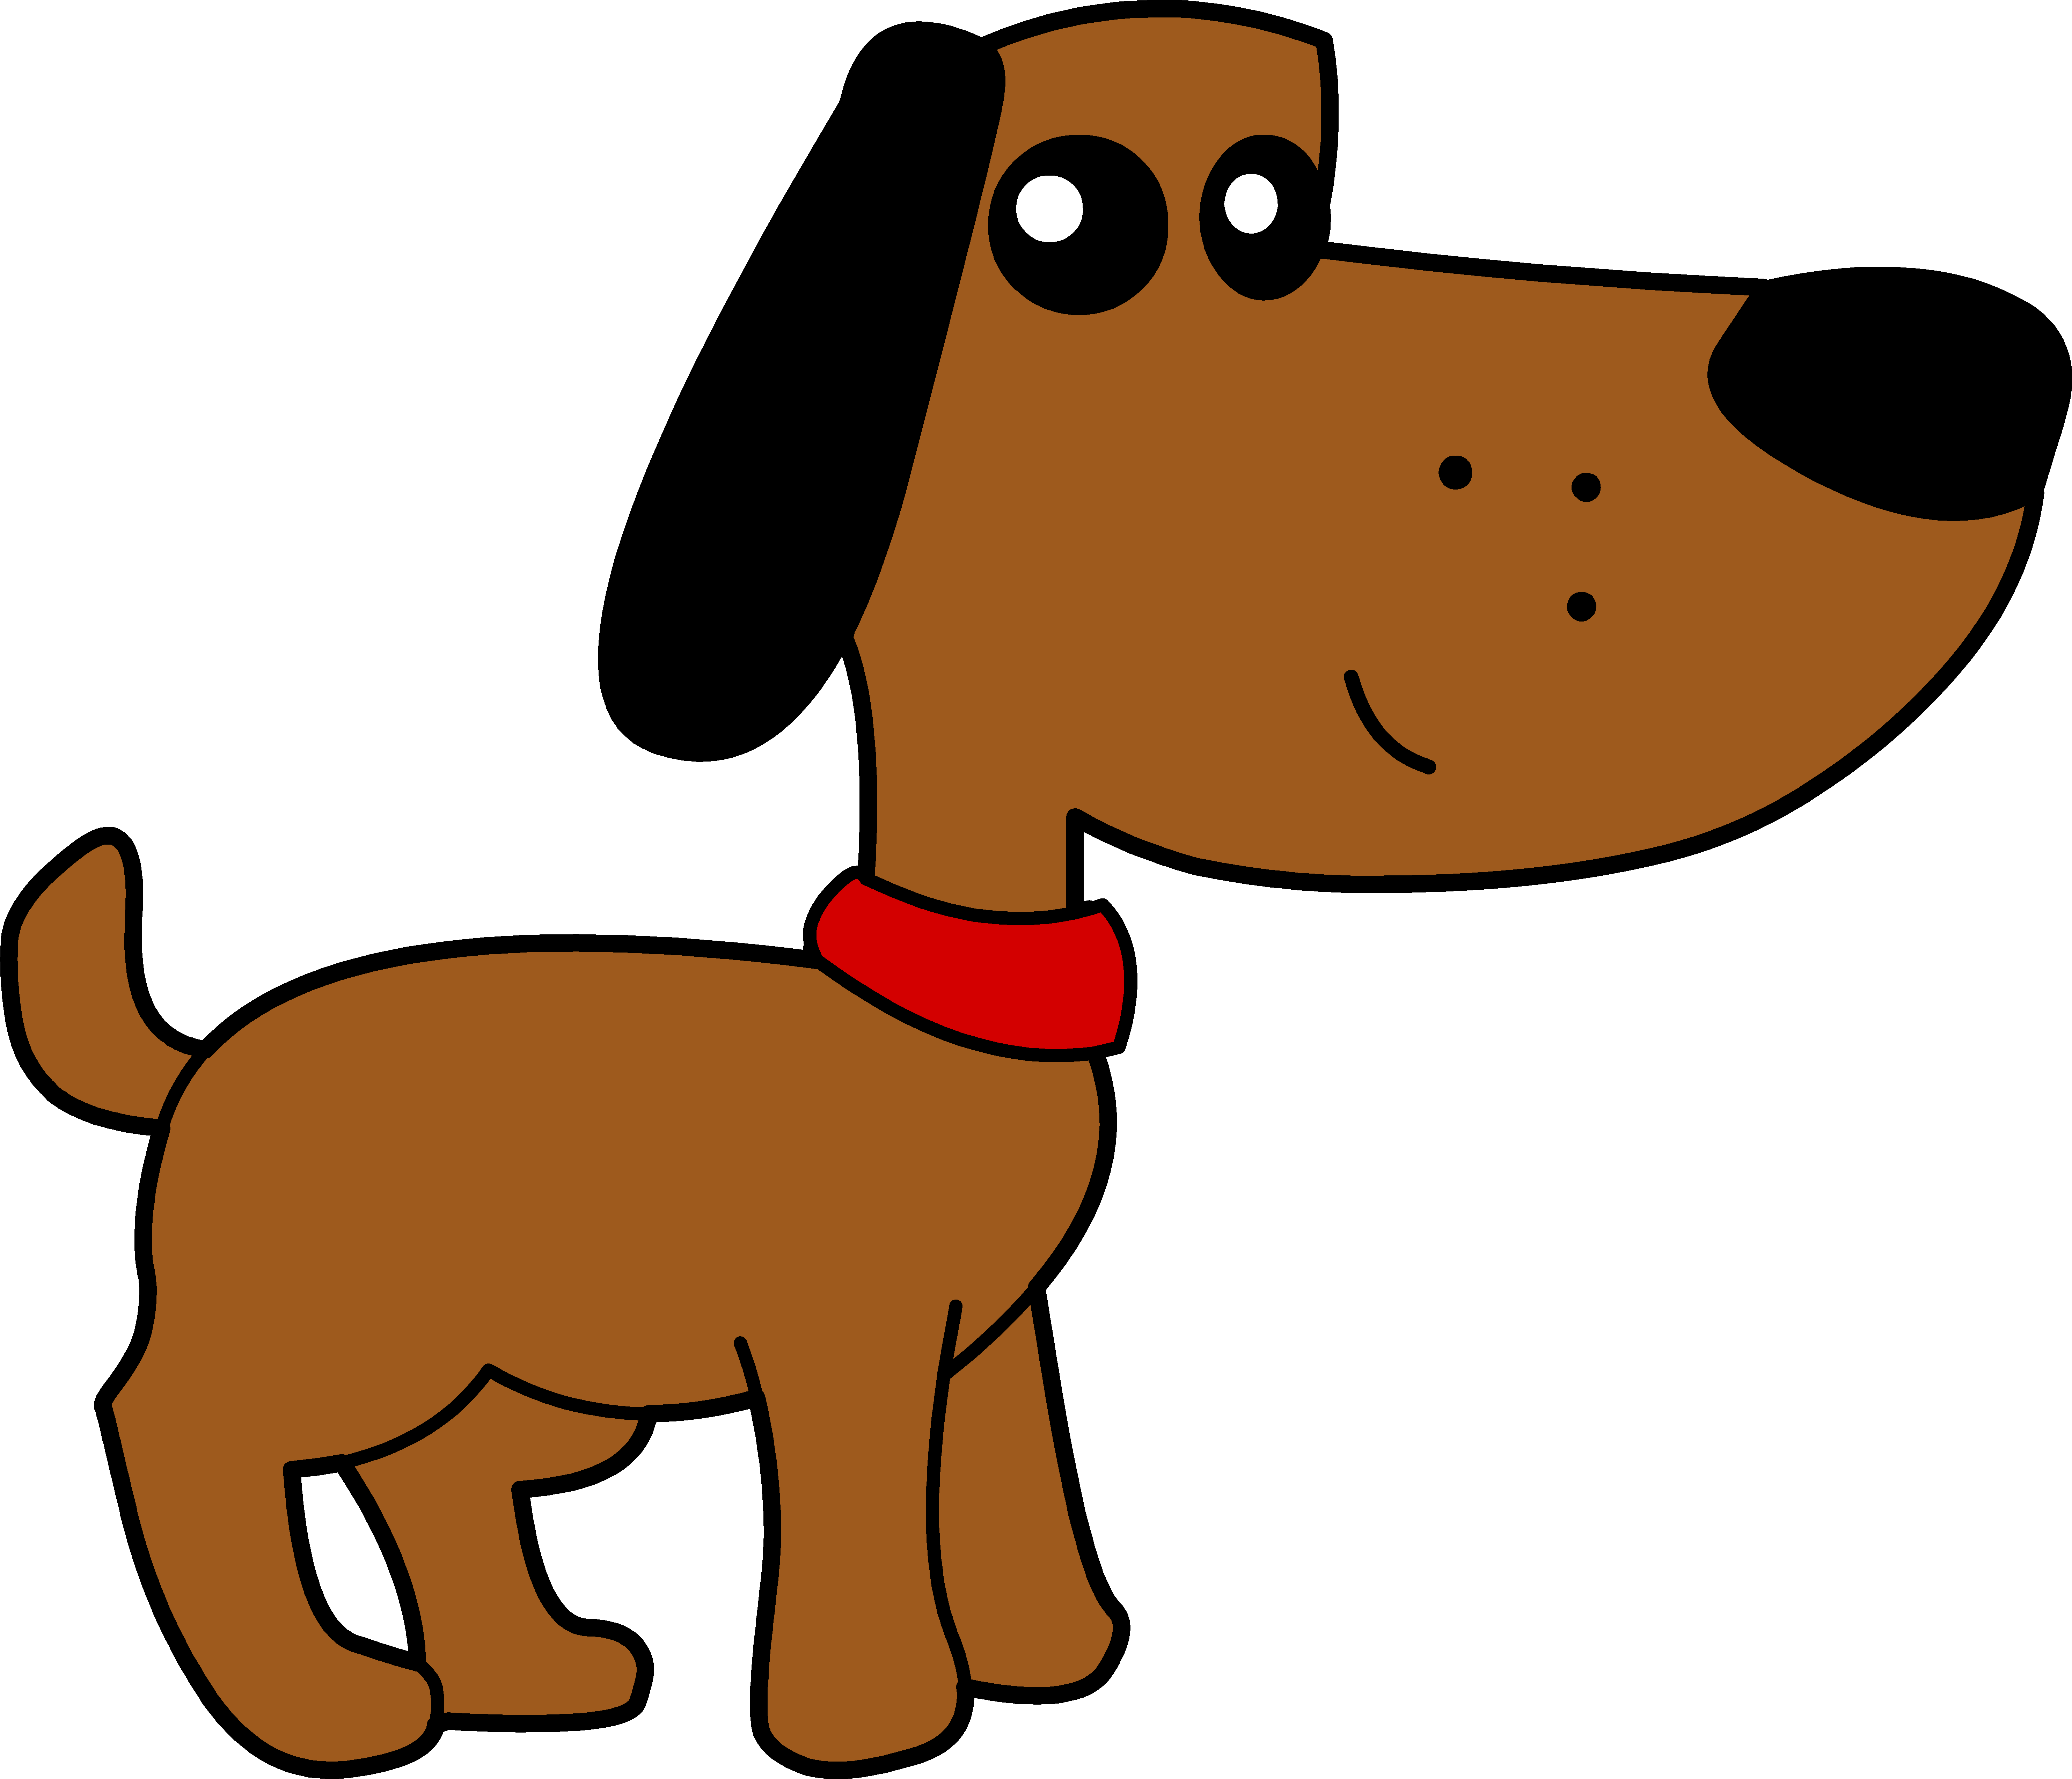 Cartoon Dachshund Dog Illustration PNG image